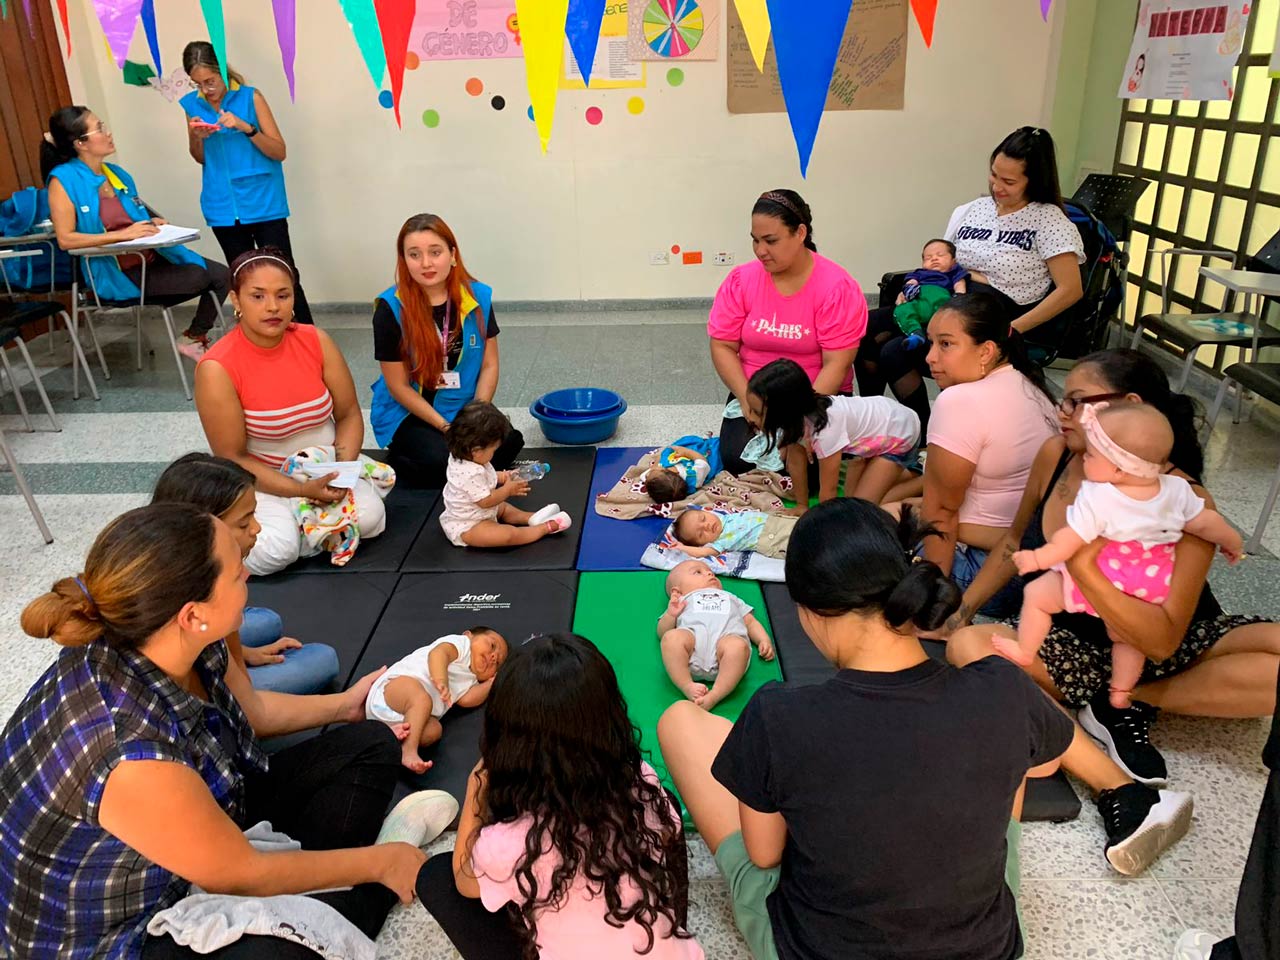 Del 8 al 11 de agosto, Medellín celebra la semana de la lactancia materna impactando a más de siete mil madres, niños y niñas